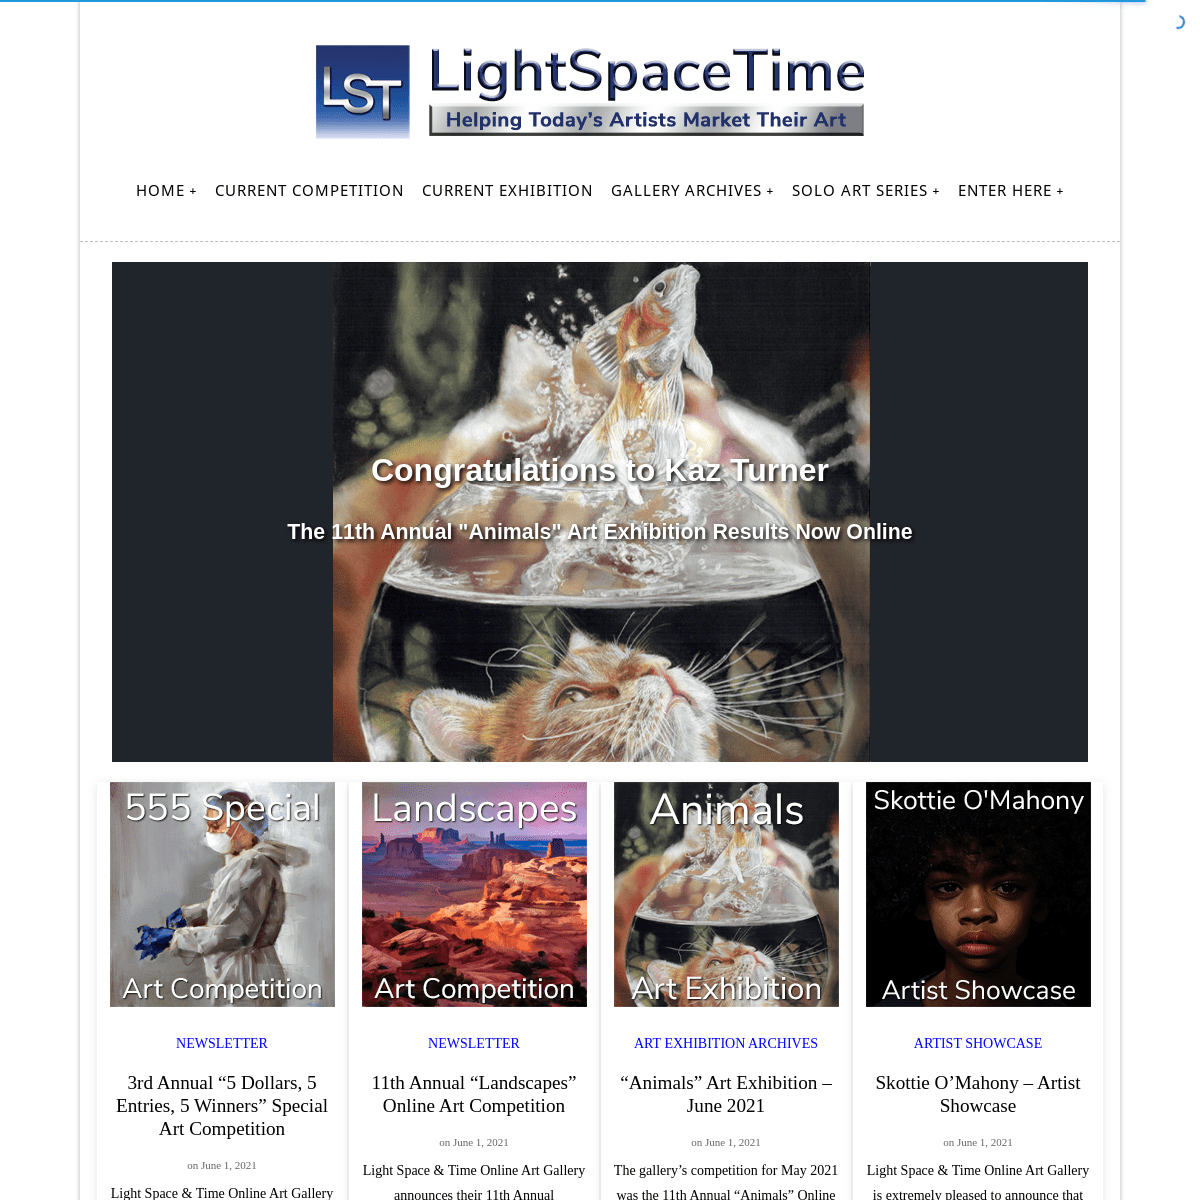 A complete backup of https://lightspacetime.com